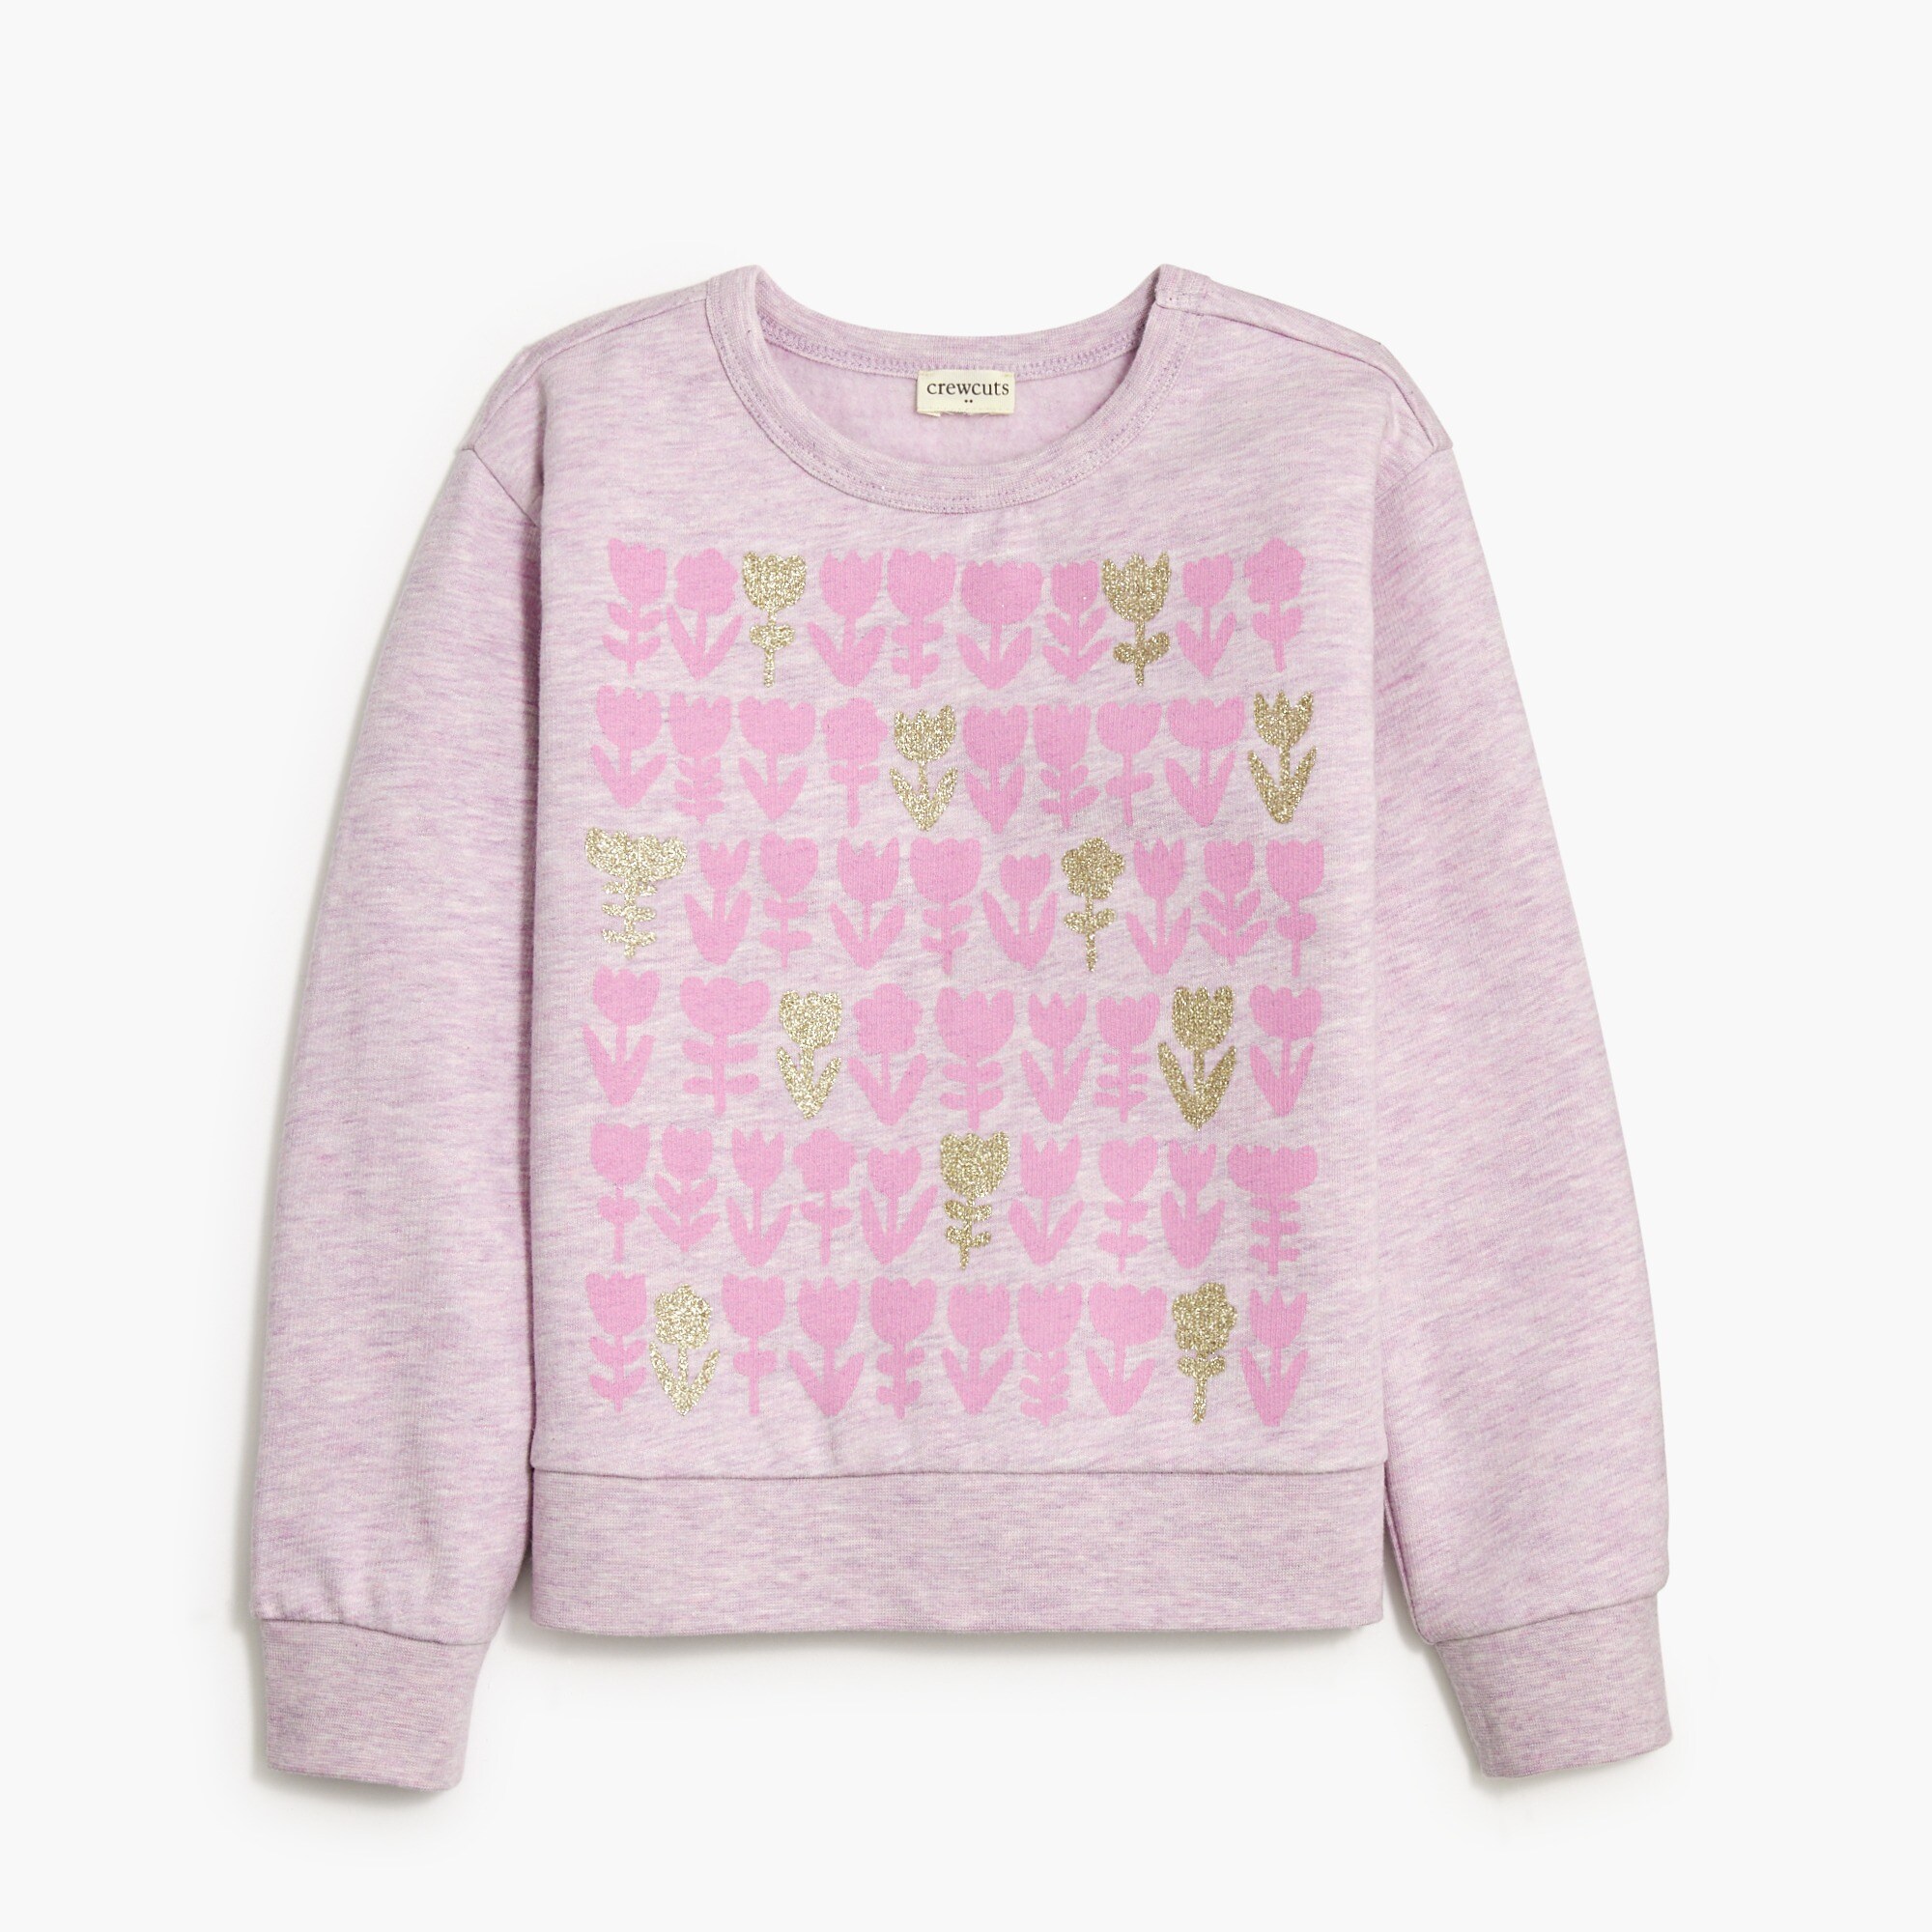  Girls' tulip graphic sweatshirt